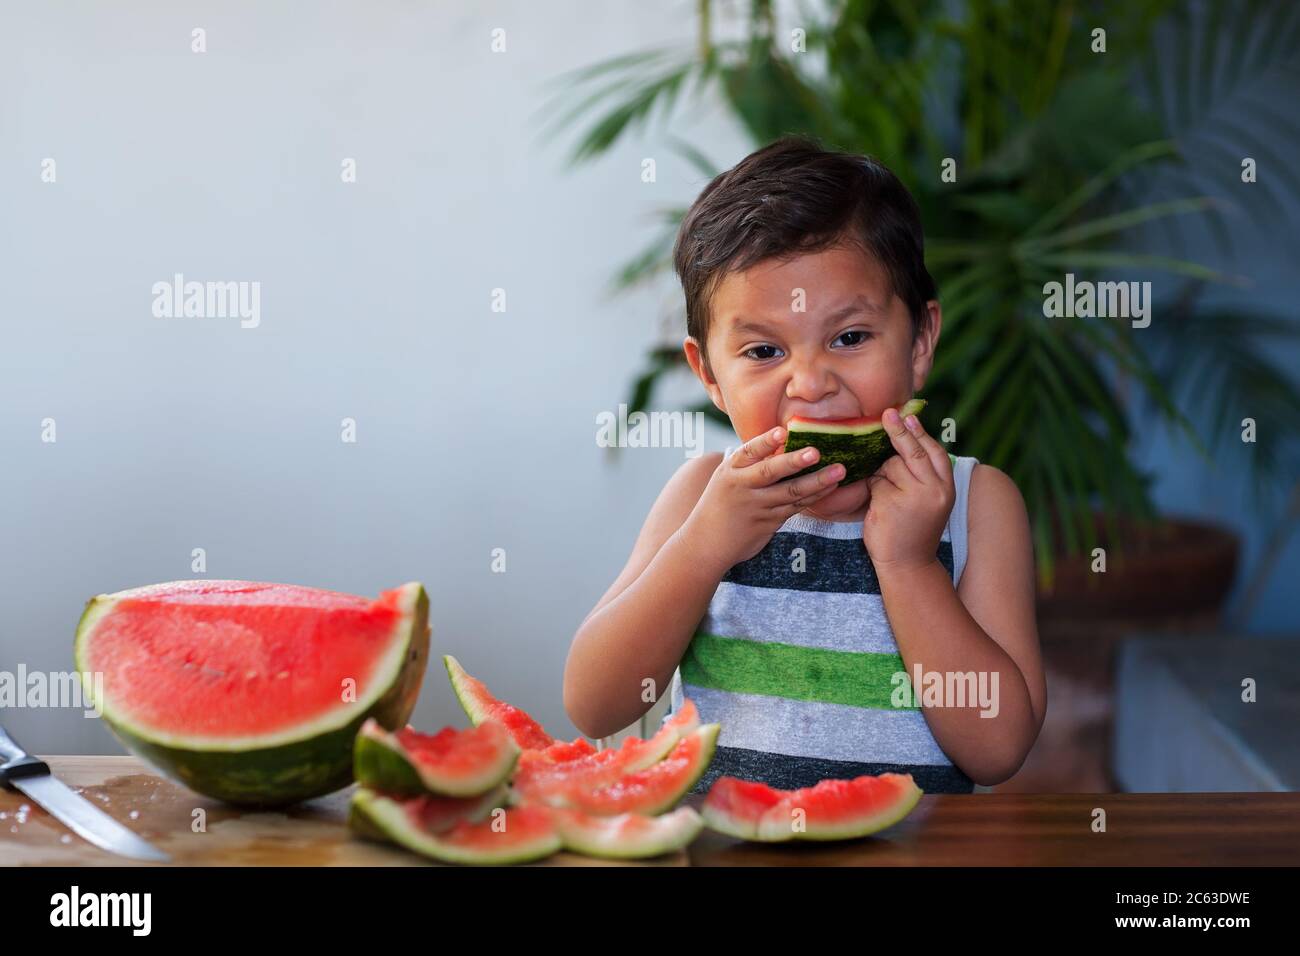 Niño tomando una mordedura de una rebanada de sandía que sostiene en la boca durante el verano. Foto de stock